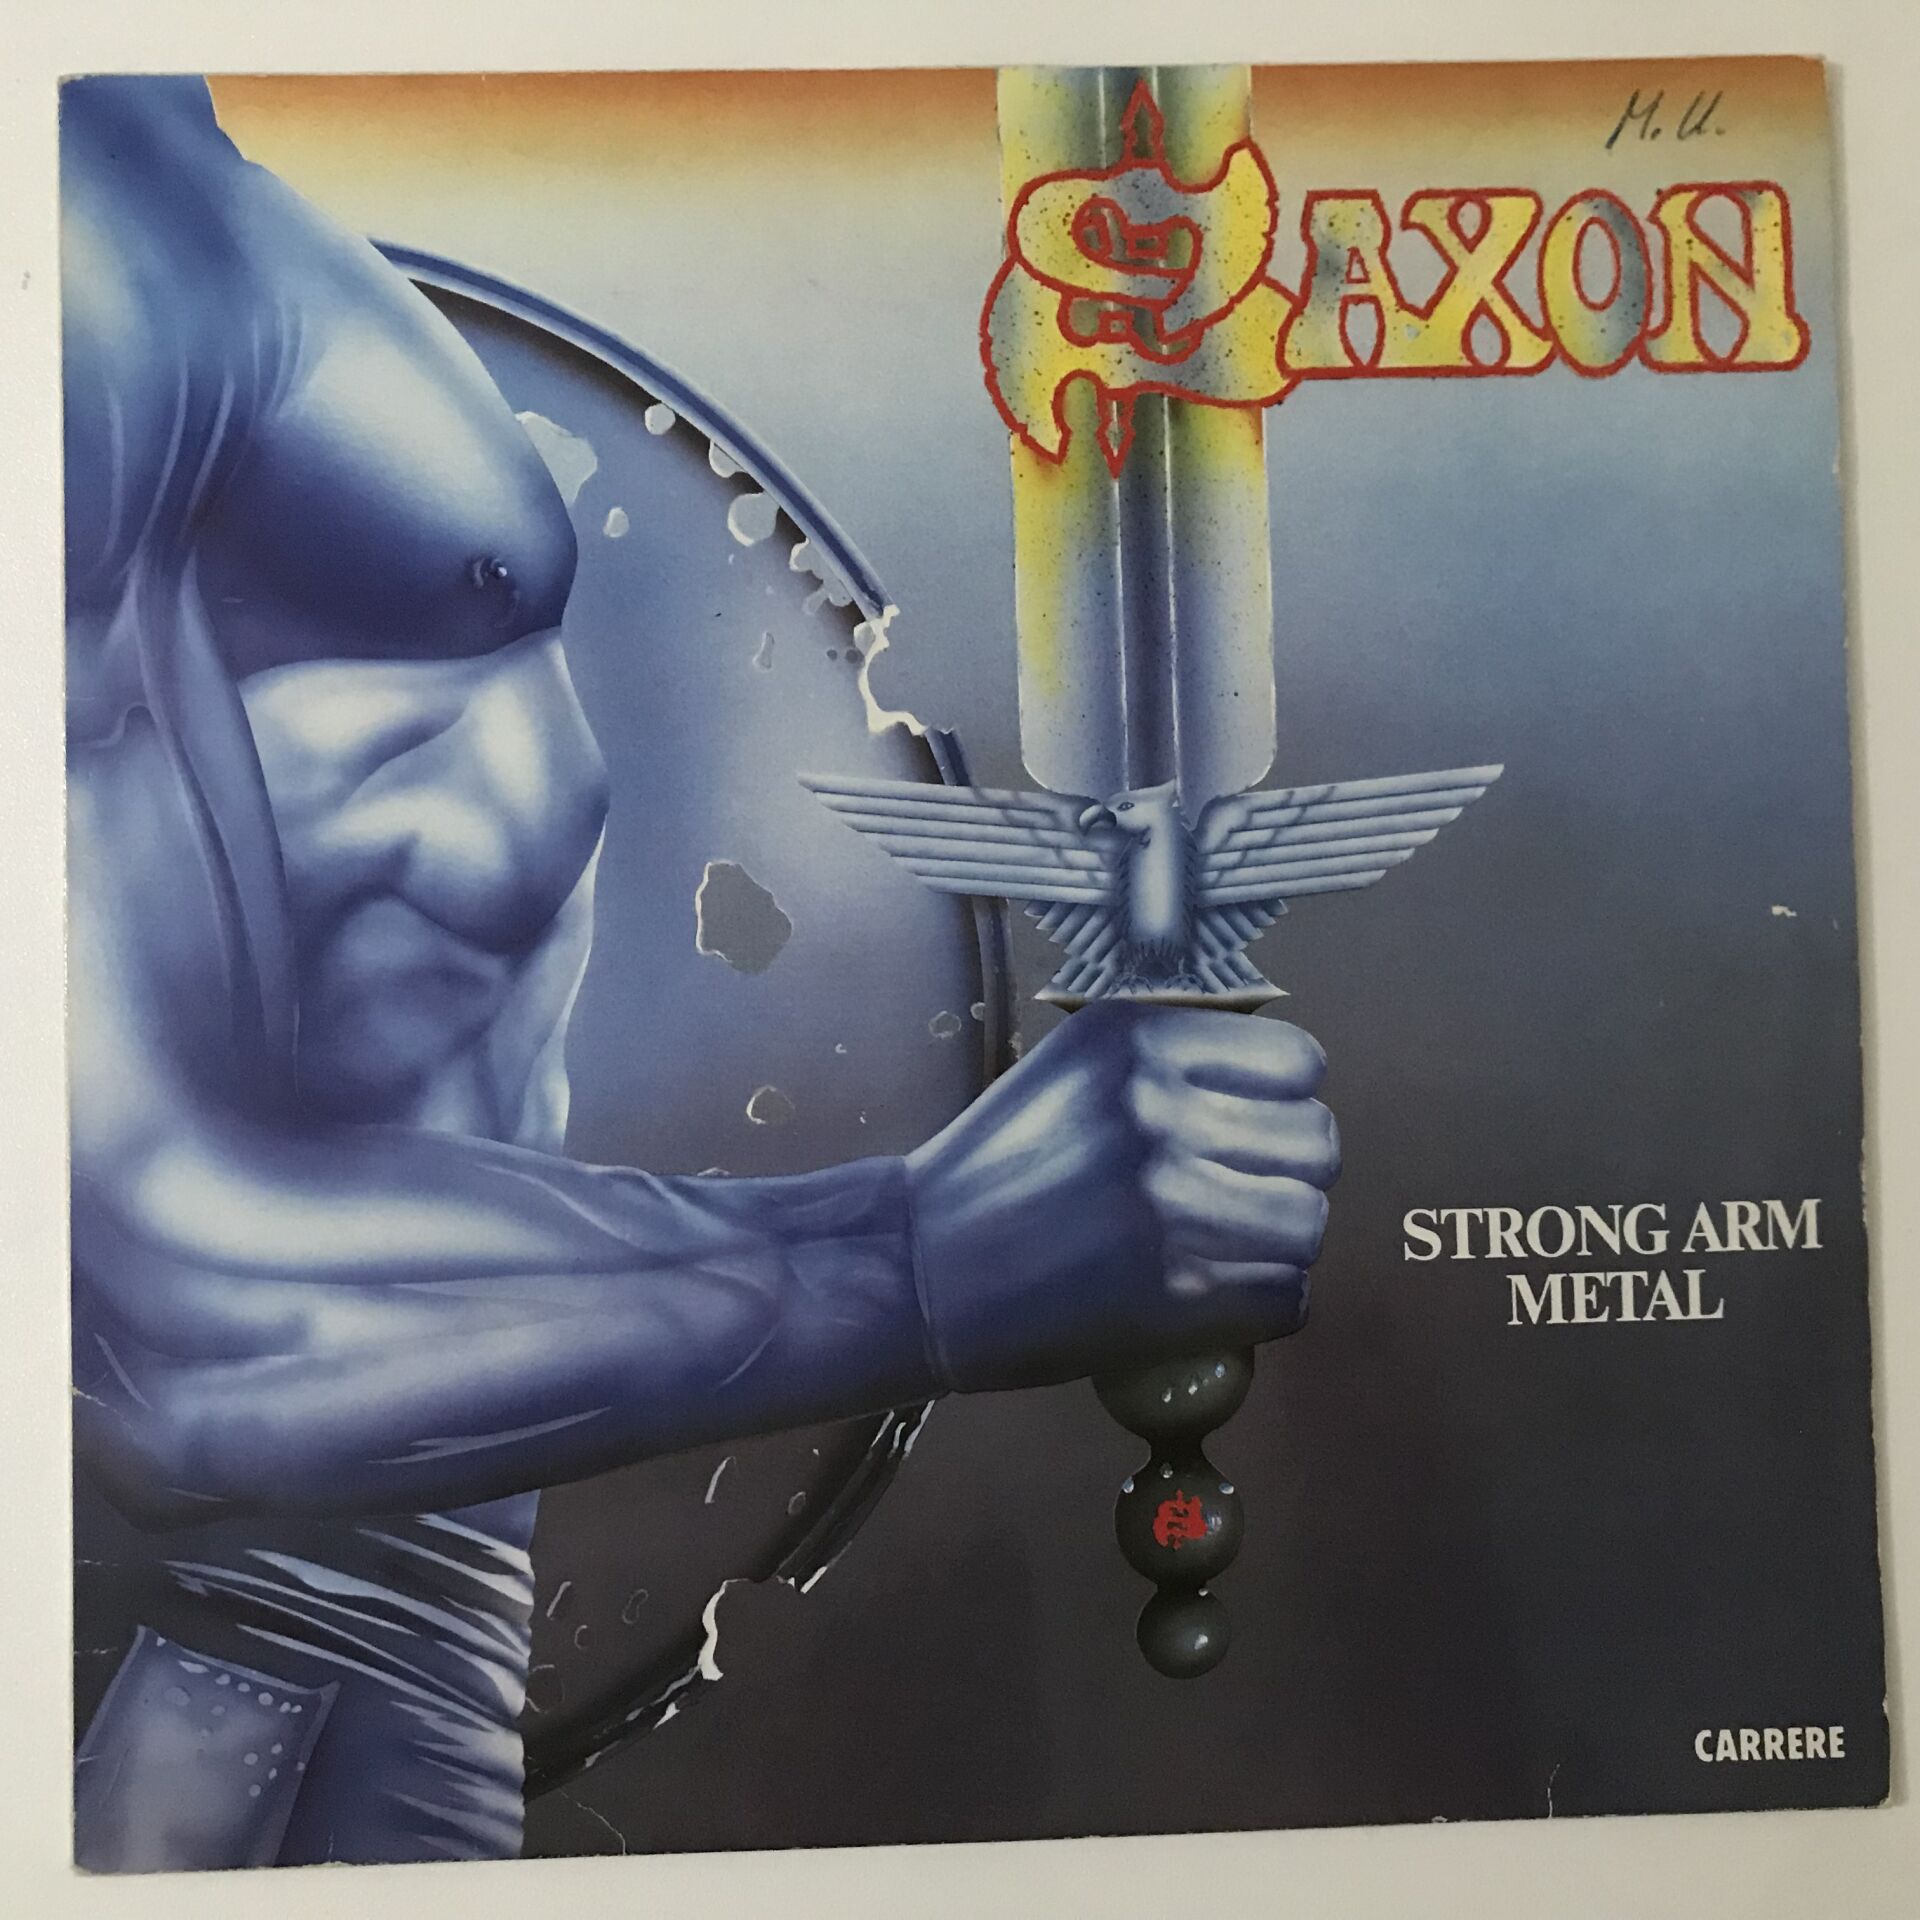 Saxon – Strong Arm Metal